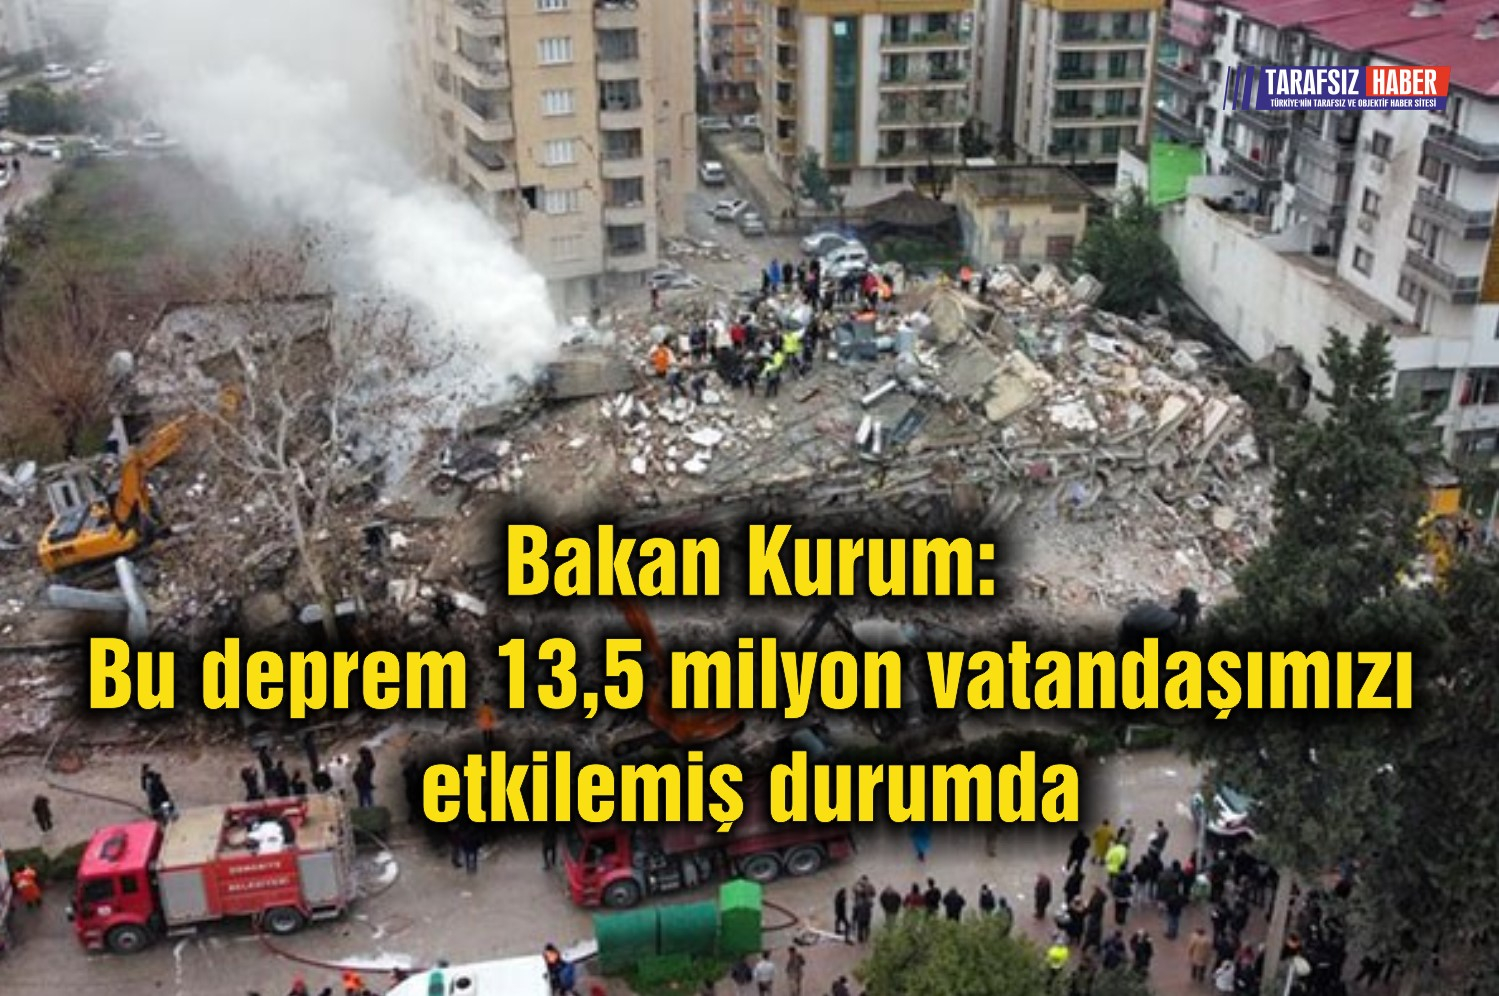 Bakan Kurum: Bu deprem 13,5 milyon vatandaşımızı etkilemiş durumda